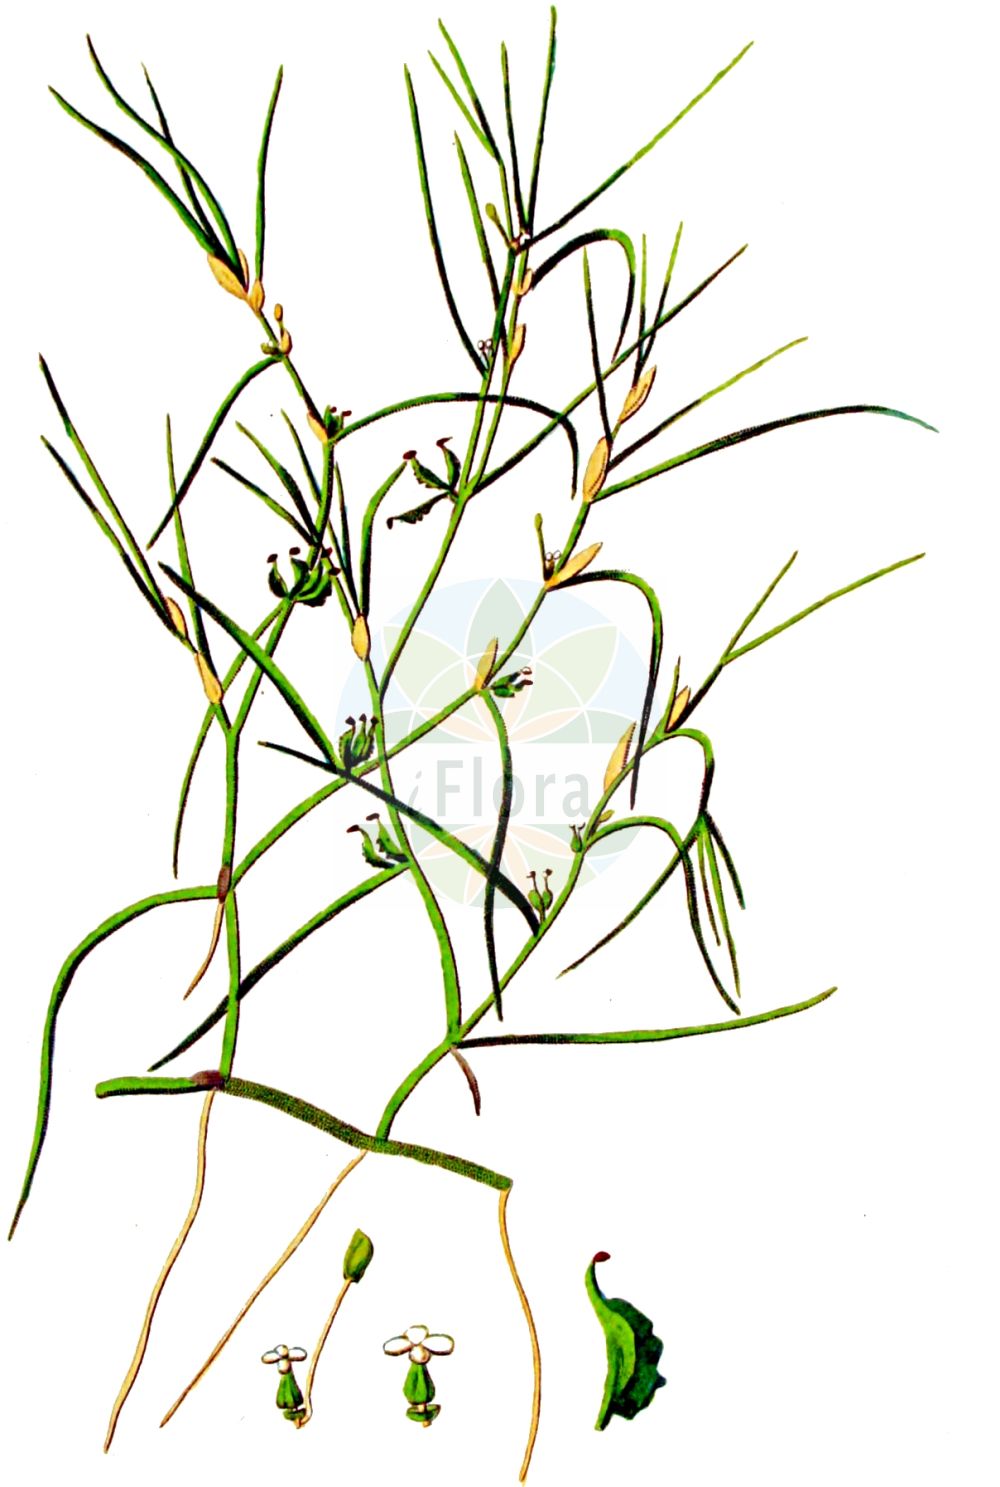 Historische Abbildung von Zannichellia palustris (Salz-Teichfaden - Horned Pondweed). Das Bild zeigt Blatt, Bluete, Frucht und Same. ---- Historical Drawing of Zannichellia palustris (Salz-Teichfaden - Horned Pondweed). The image is showing leaf, flower, fruit and seed.(Zannichellia palustris,Salz-Teichfaden,Horned Pondweed,Zannichellia dentata,Zannichellia palustris,Zannichellia repens,Salz-Teichfaden,Stielfruechtiger Teichfaden,Horned Pondweed,Zannichellia,Teichfaden,Horned Pondweed,Potamogetonaceae,Laichkrautgewächse,Pondweed family,Blatt,Bluete,Frucht,Same,leaf,flower,fruit,seed,Kops (1800-1934))